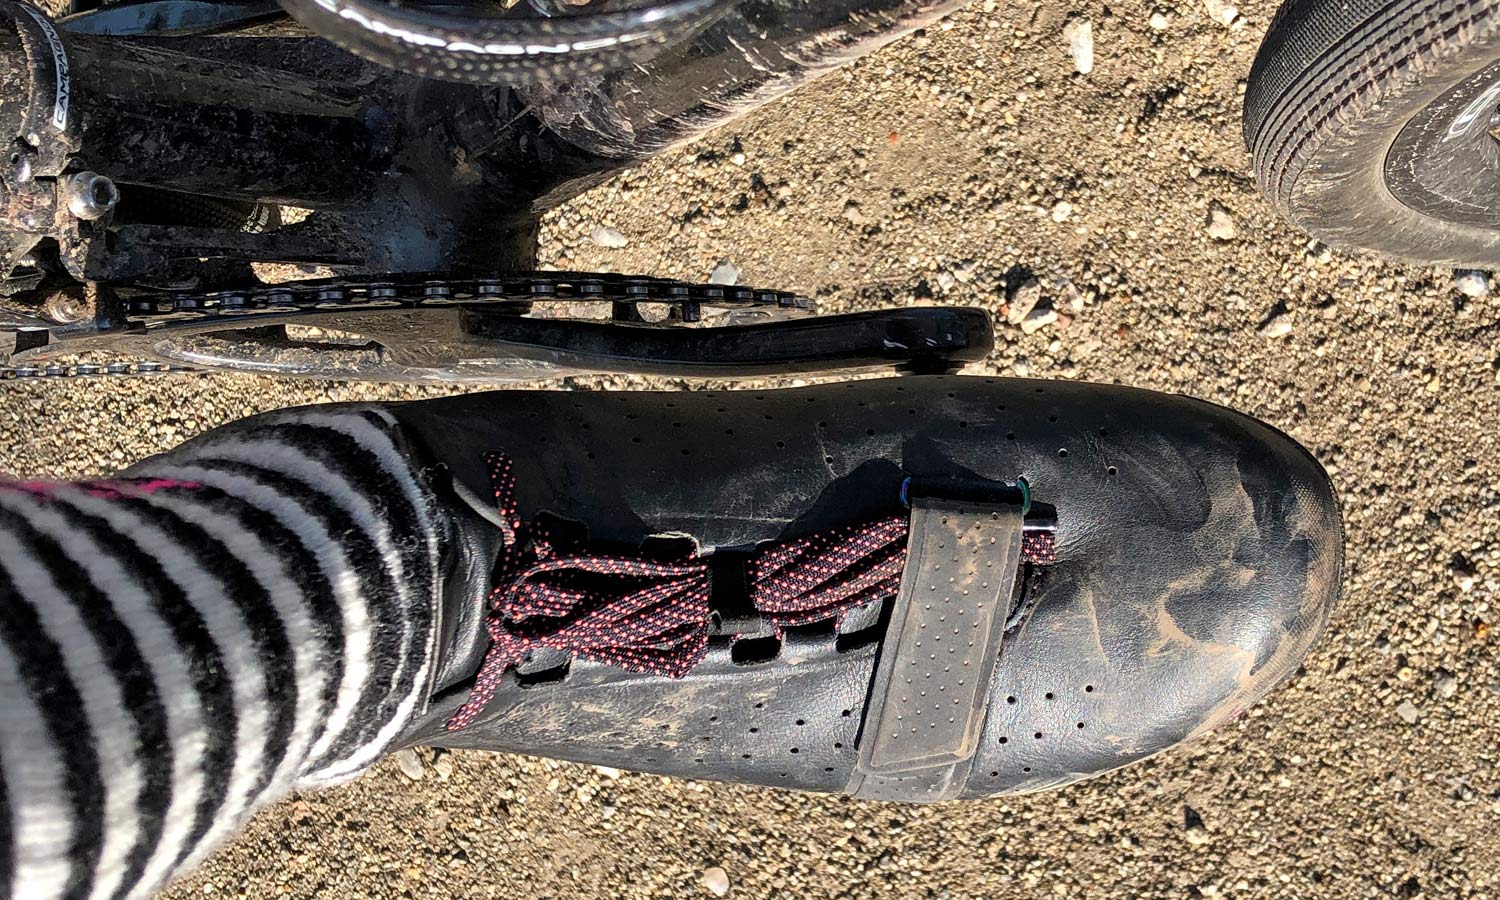 Rapha Explore shoes, carbon-soled off-road gravel adventure bike riding shoes